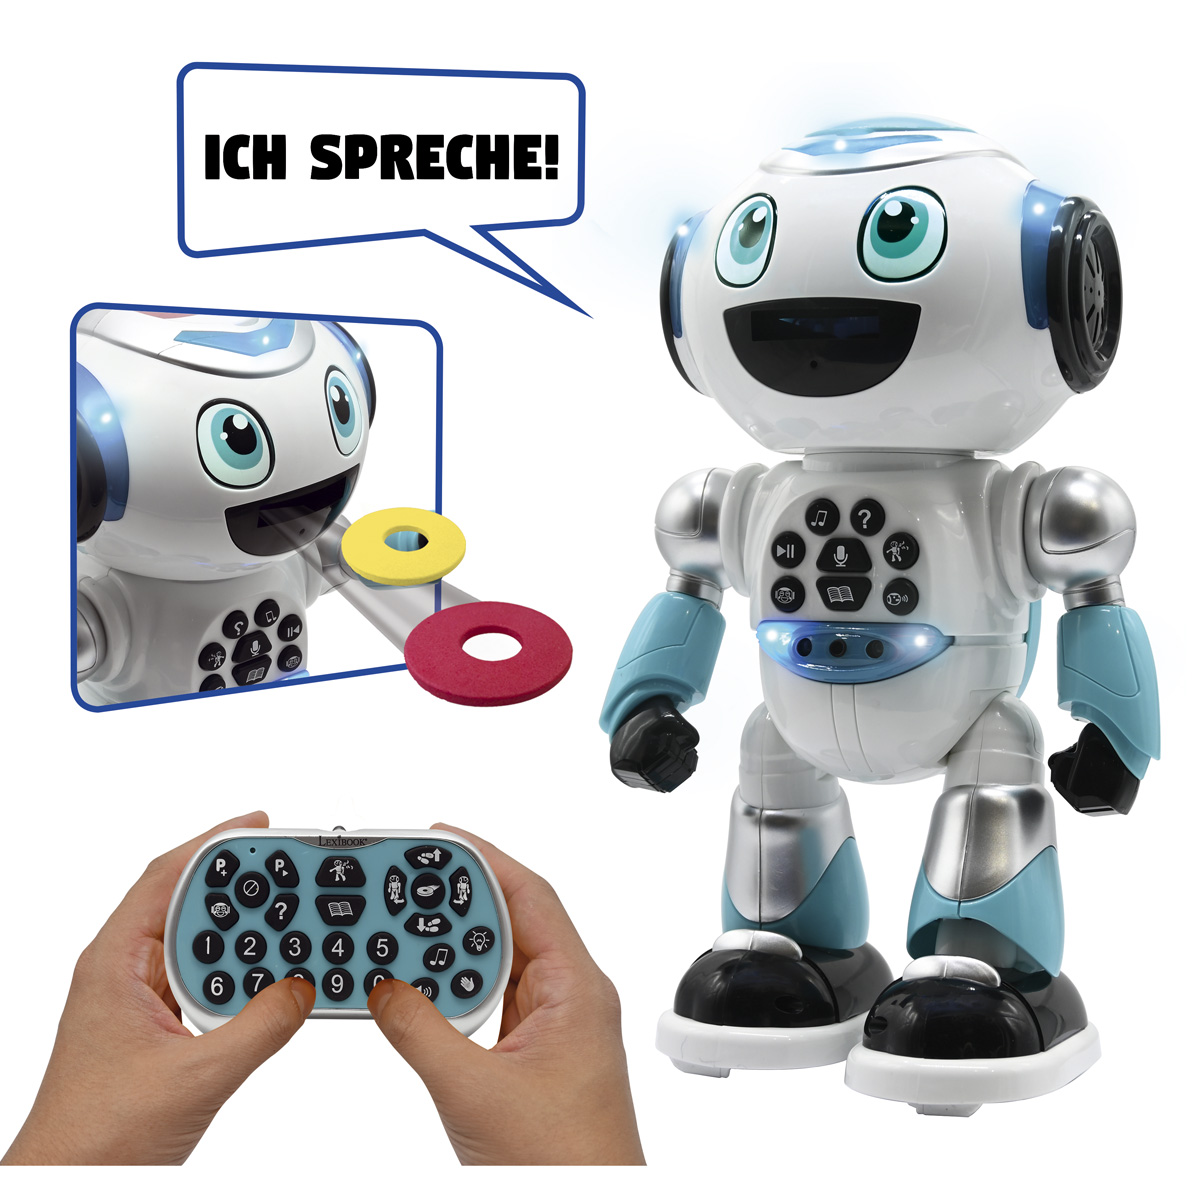 LEXIBOOK sprechend) Blau/Weiß (Deutsch Lernroboter, mit Geschichtsgenerator ADVANCED POWERMAN®